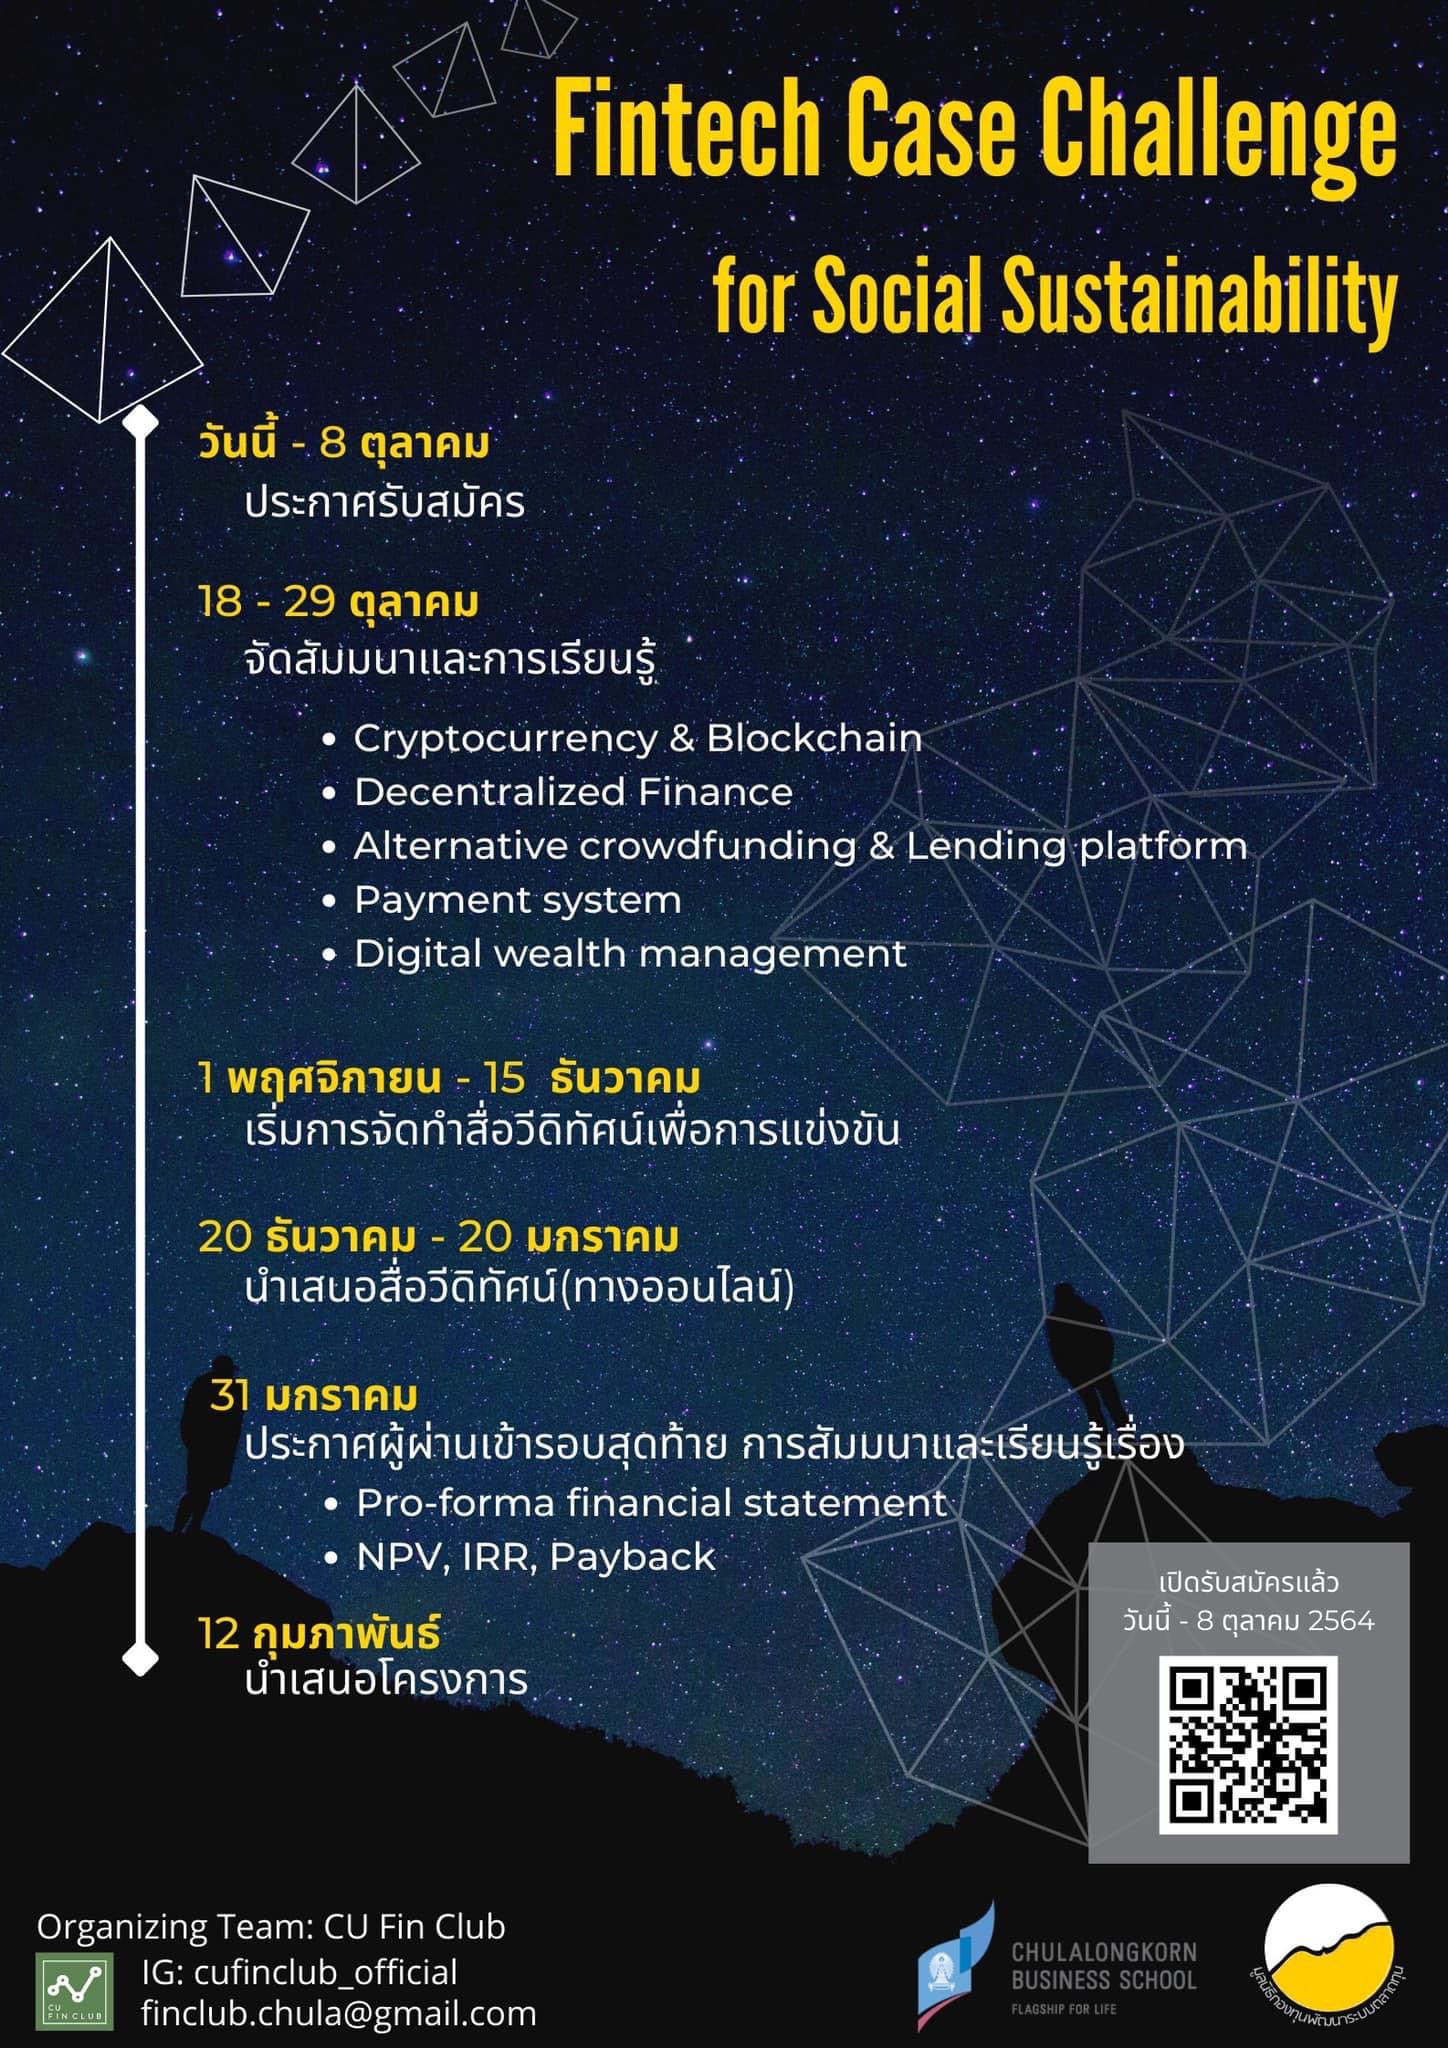 เปิดรับสมัครแล้ว: Fintech Case Challenge For Social Sustainability โดย  มูลนิธิกองทุนพัฒนาระบบตลาดทุน  ร่วมกับคณะพาณิชยศาสตร์และการบัญชีจุฬาลงกรณ์มหาวิทยาลัย Chulalongkorn  Business School - Chulalongkorn Business School